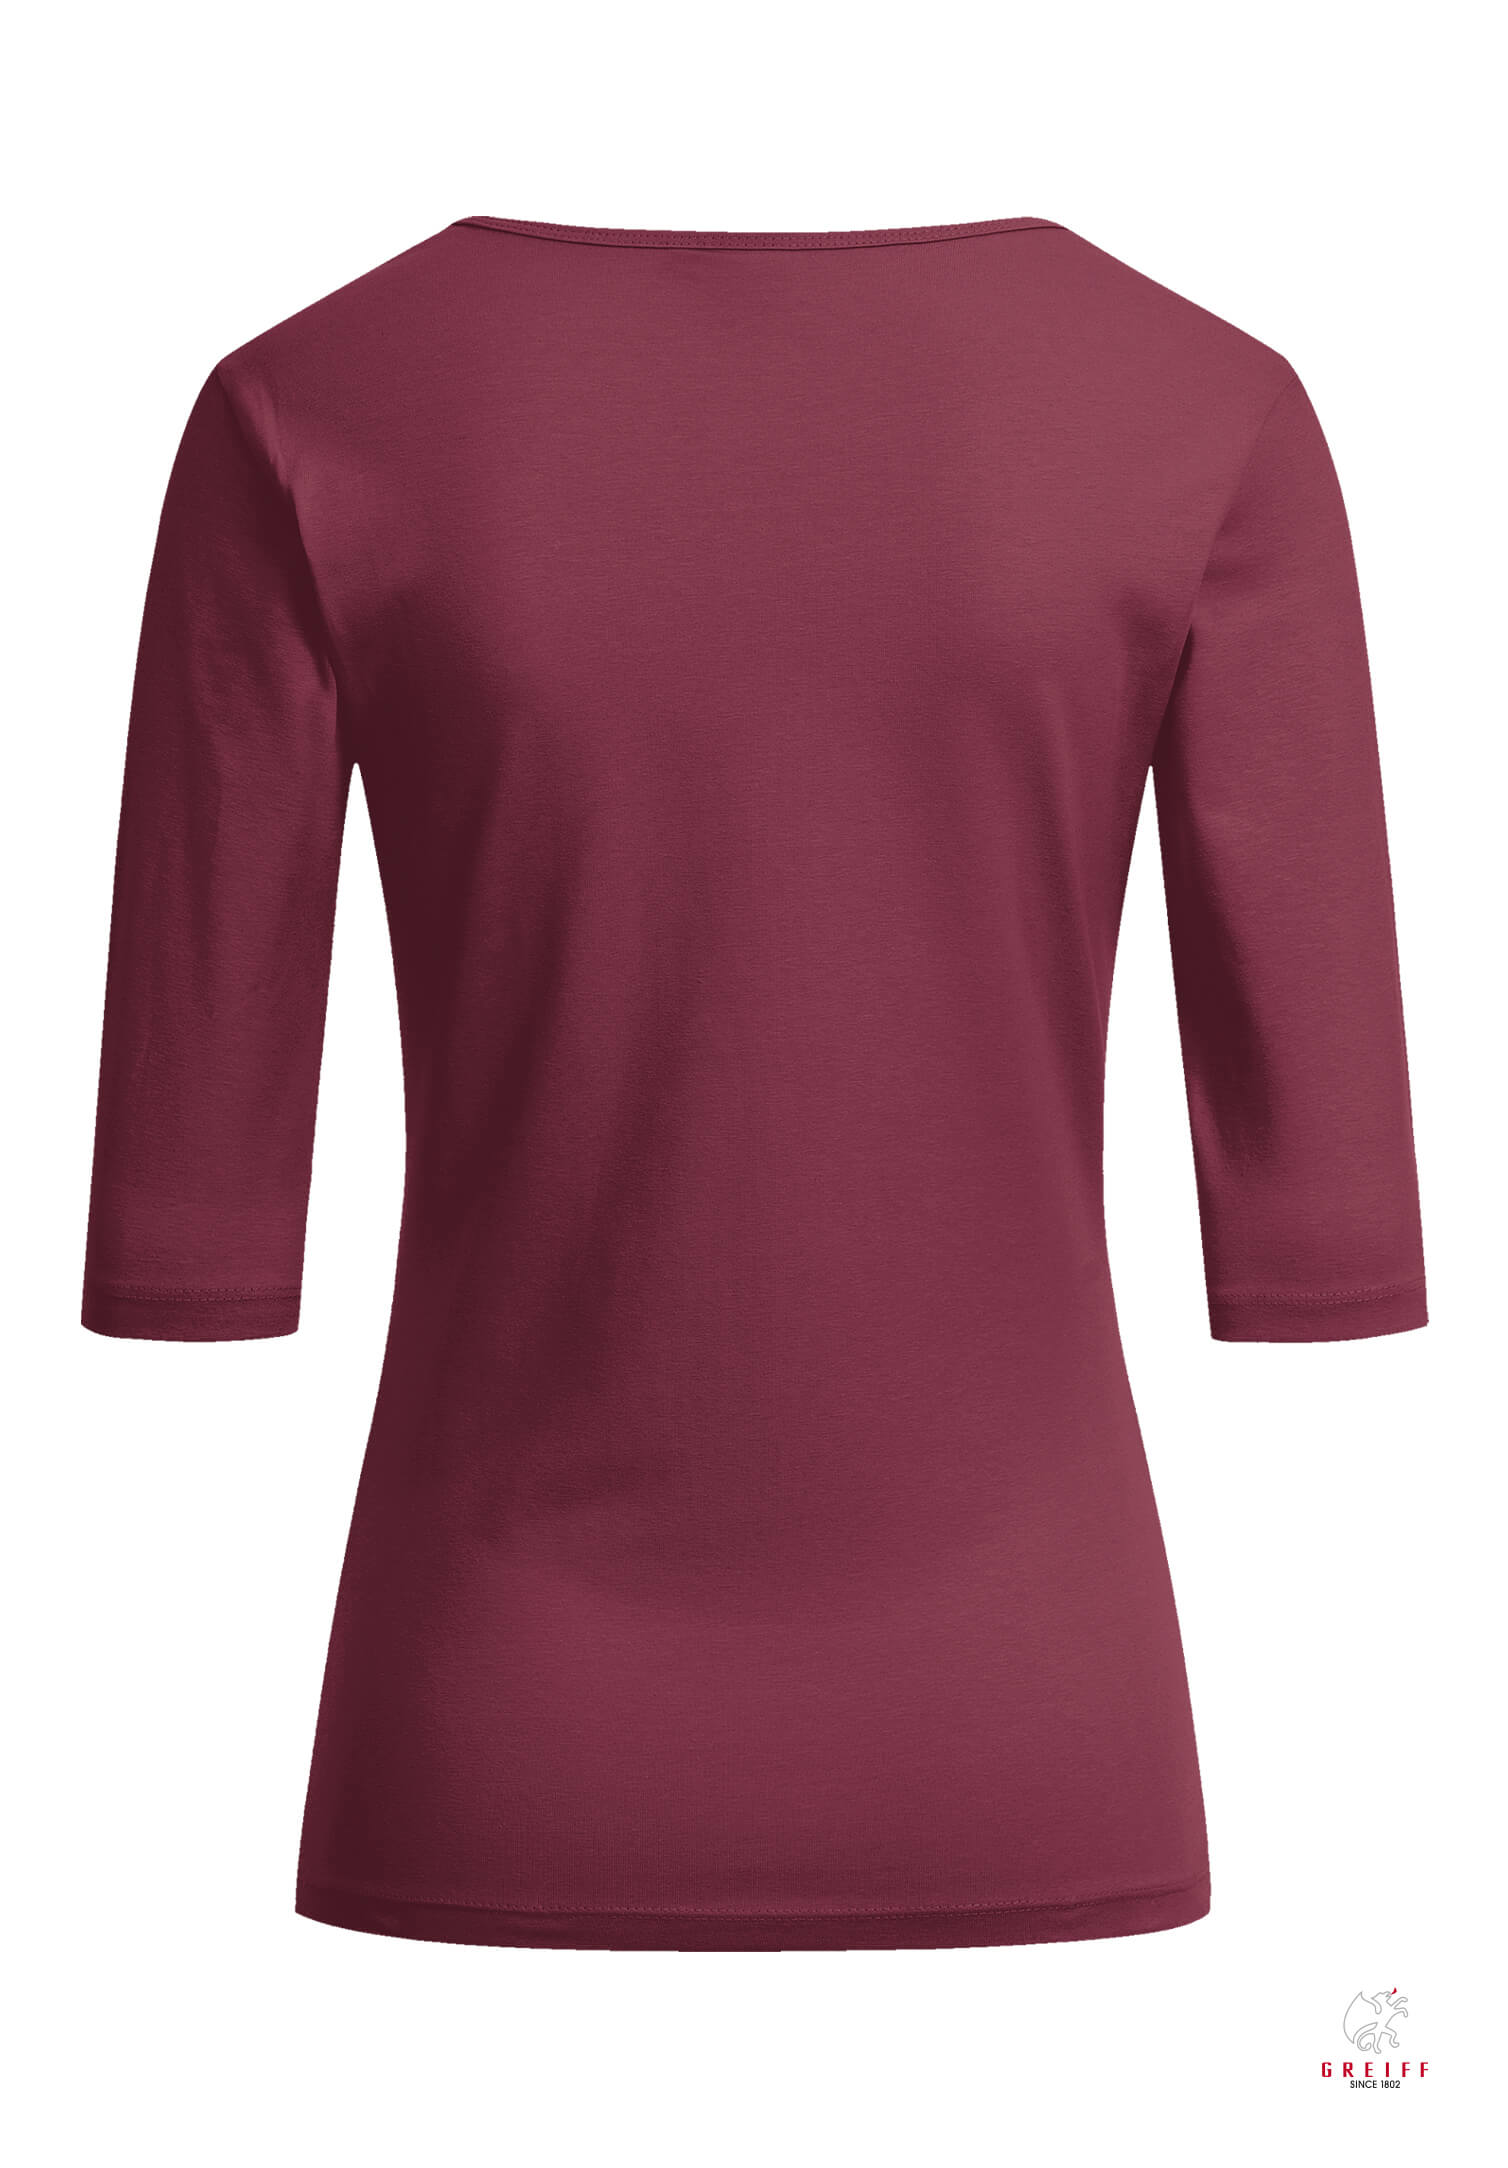 Damen Shirt 3/4 - burgund - 3XL